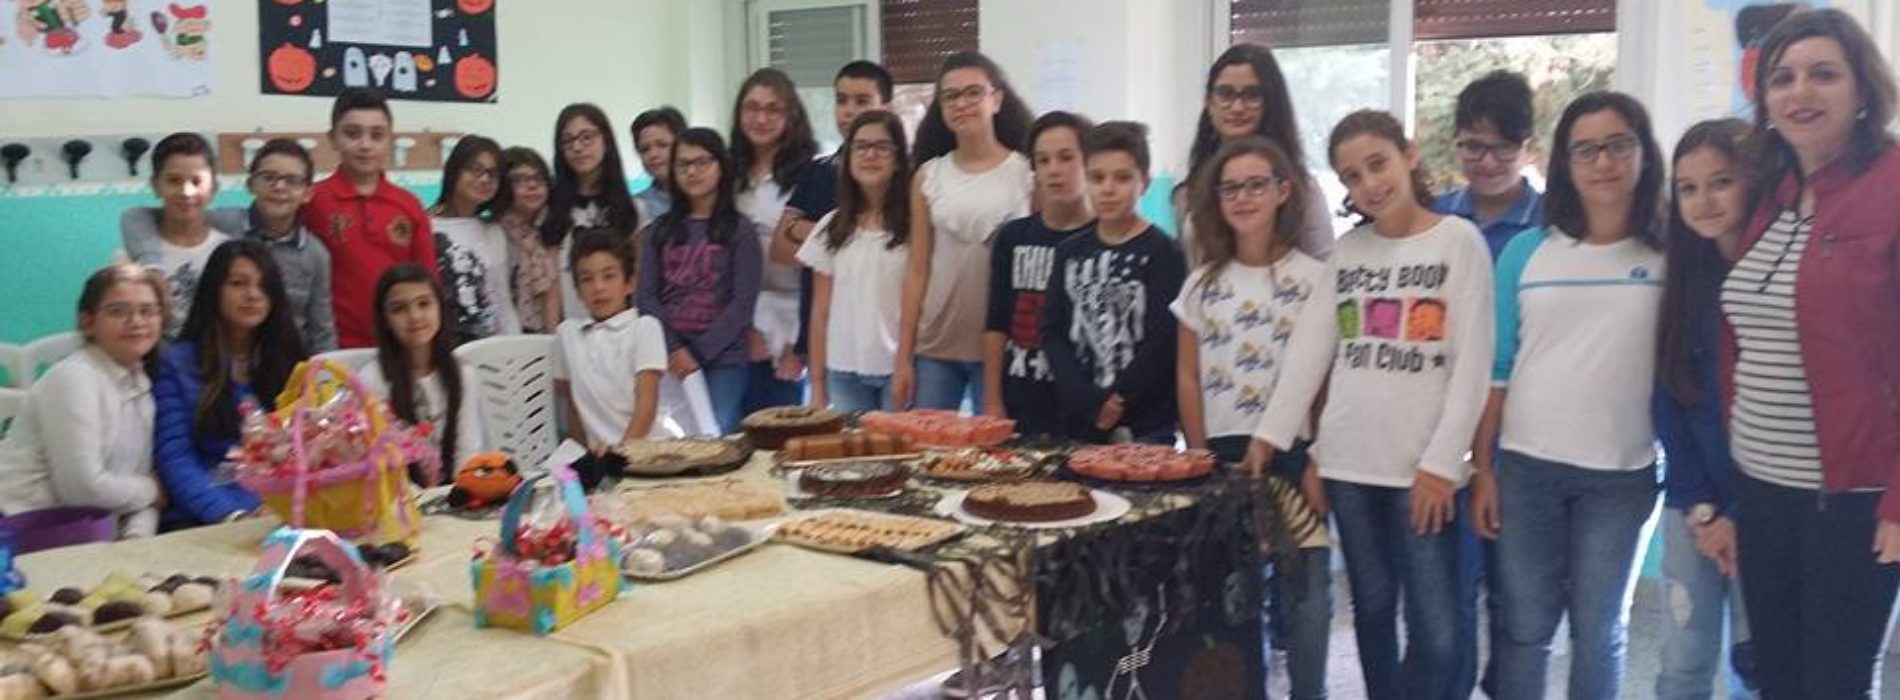 La scuola G. Verga ripropone l’evento “Commemorazione dei defunti fra tradizione e festa”